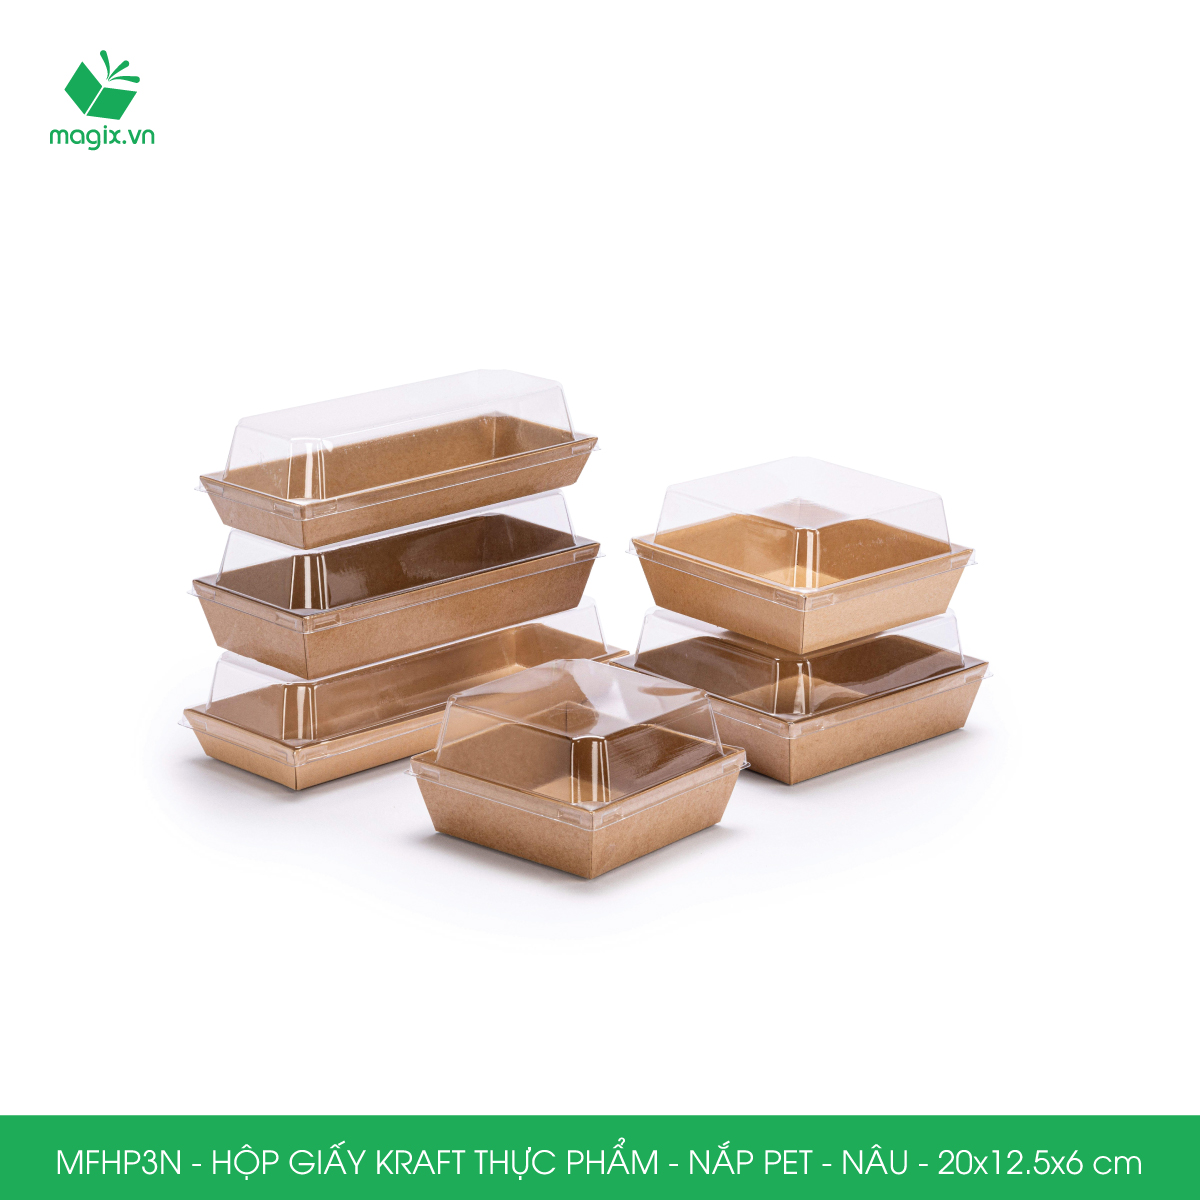 MFHP3N - 20x12.5x6 cm - 100 hộp giấy kraft thực phẩm màu nâu nắp Pet, hộp giấy chữ nhật đựng thức ăn, hộp bánh nắp trong